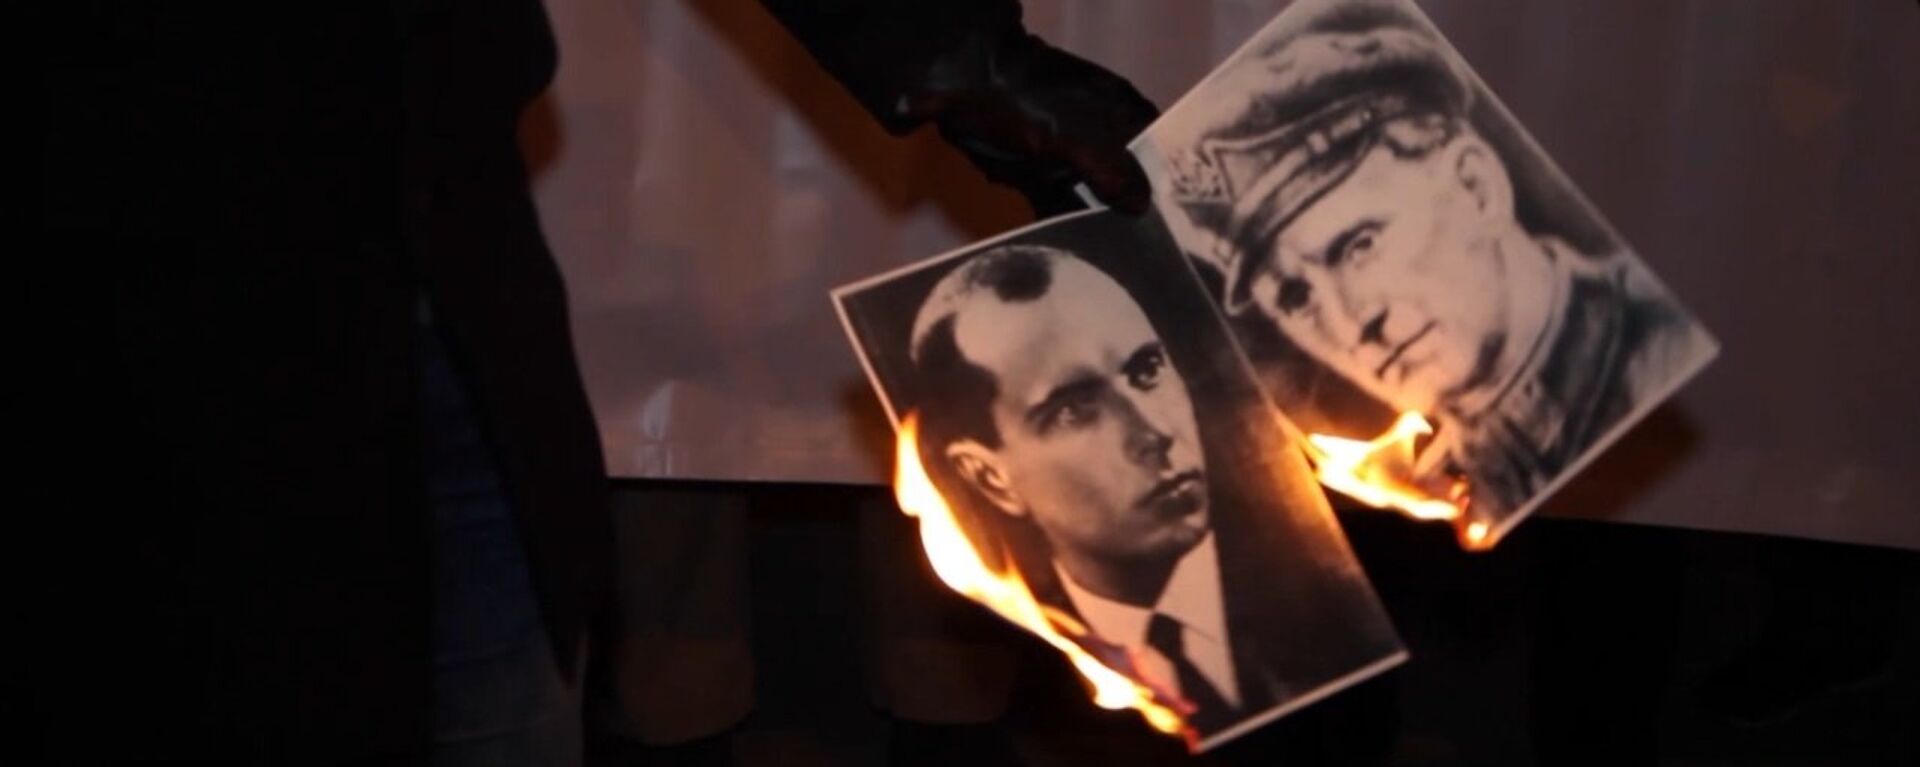 Польские националисты сожгли портреты Бандеры и Шухевича перед посольством Украины в Варшаве - Sputnik Латвия, 1920, 21.03.2018